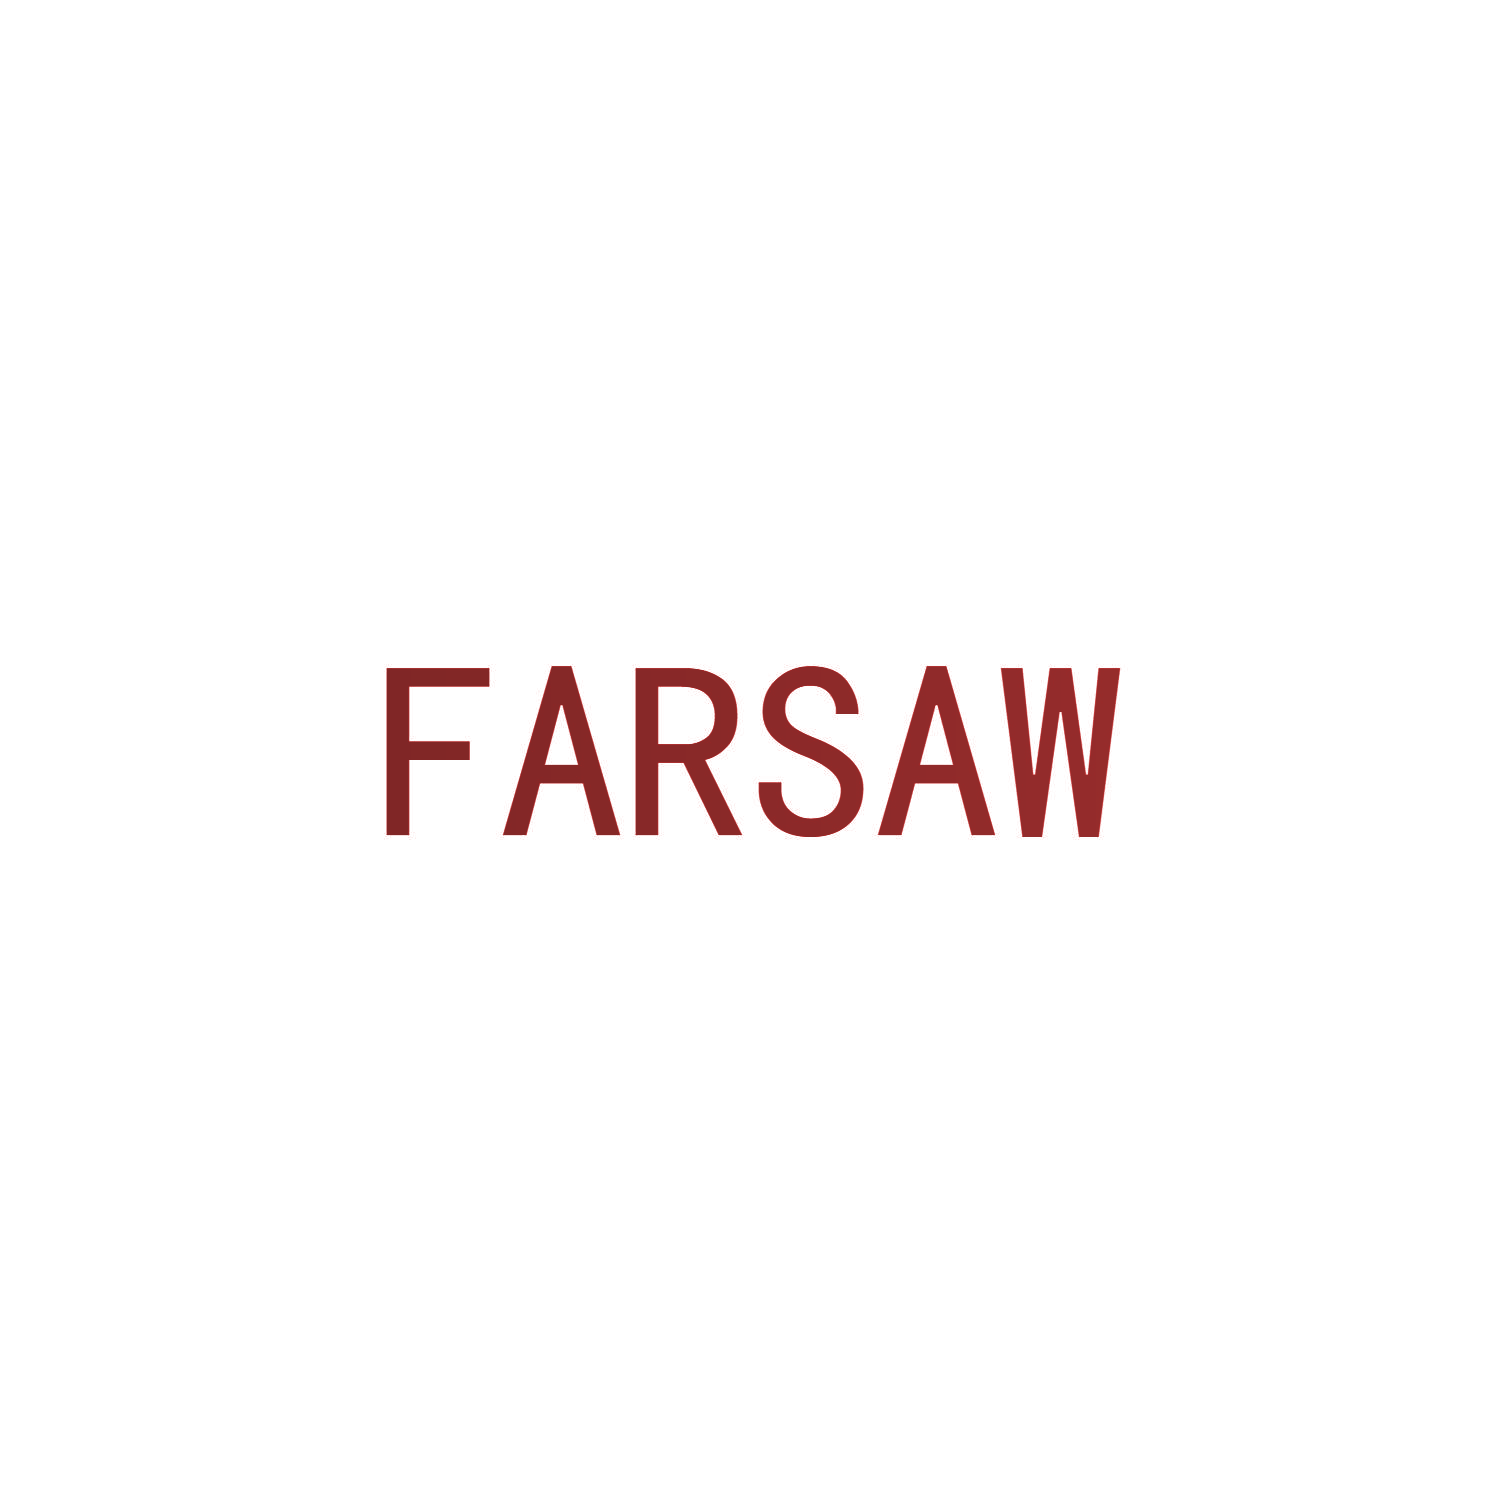 FARSAW